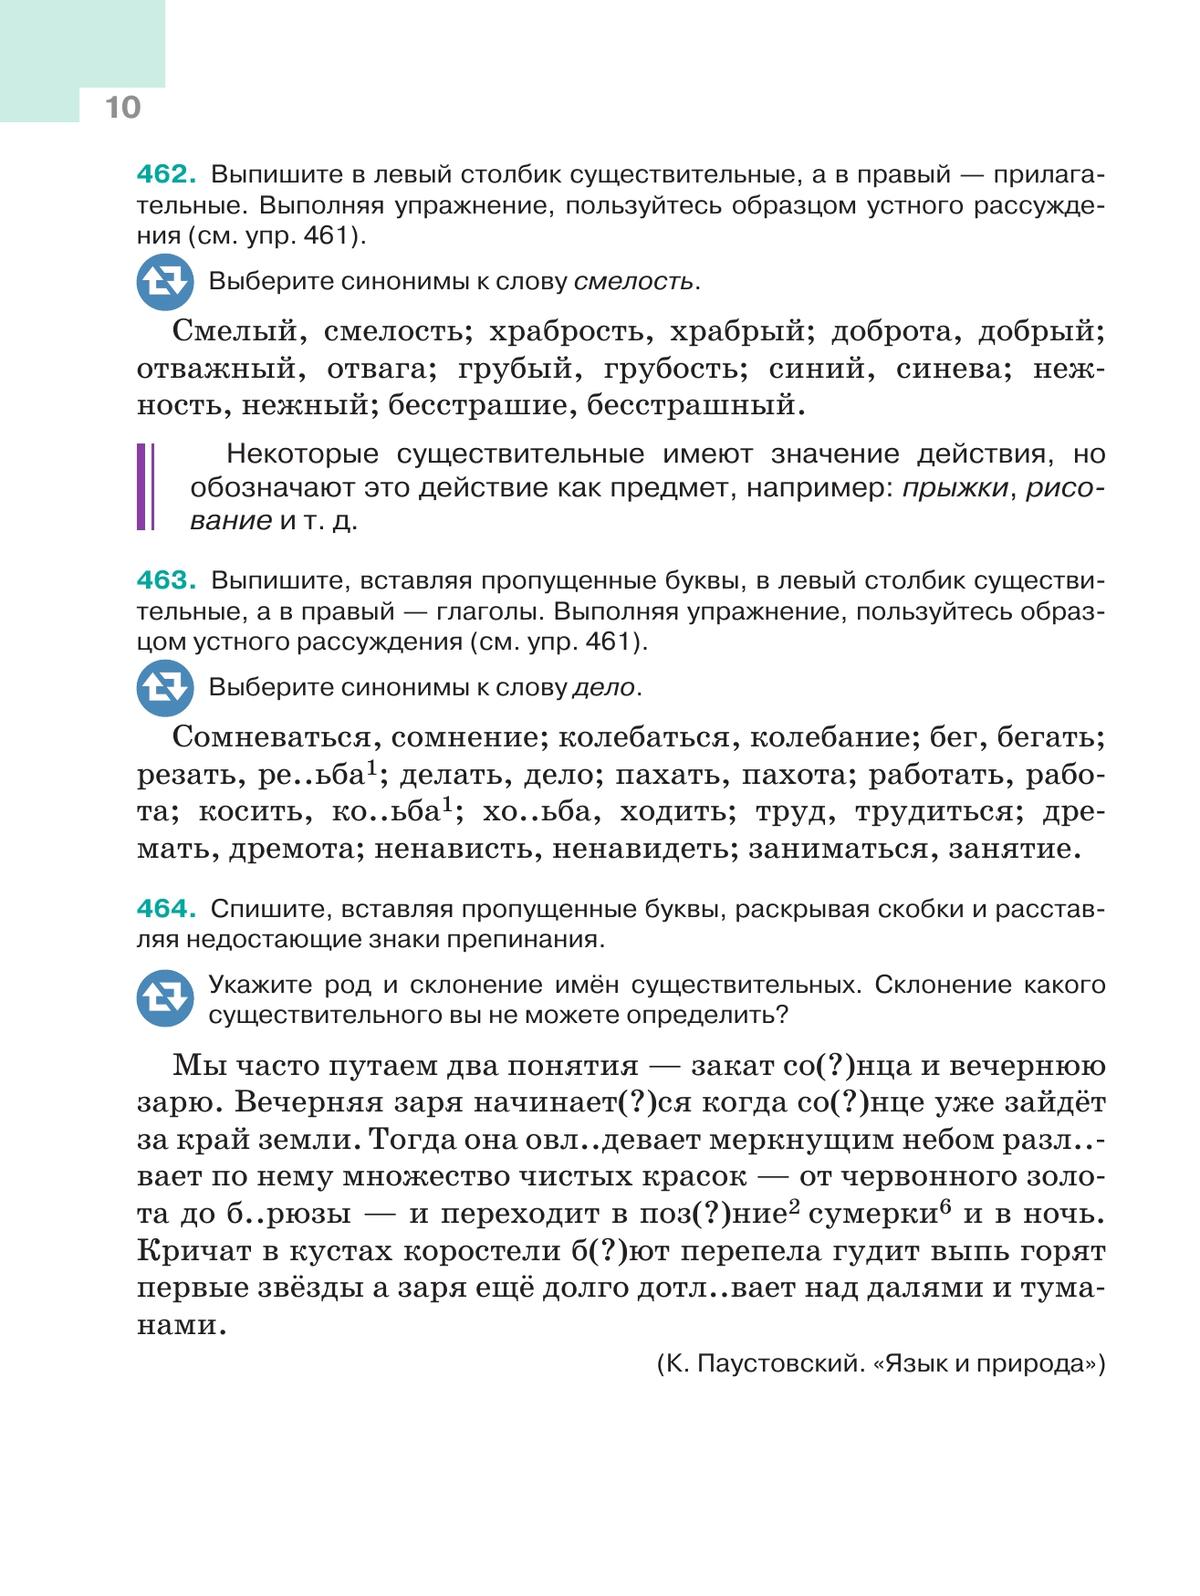 Русский язык. 5 класс. Учебник. В 2-х ч. Ч. 2 2